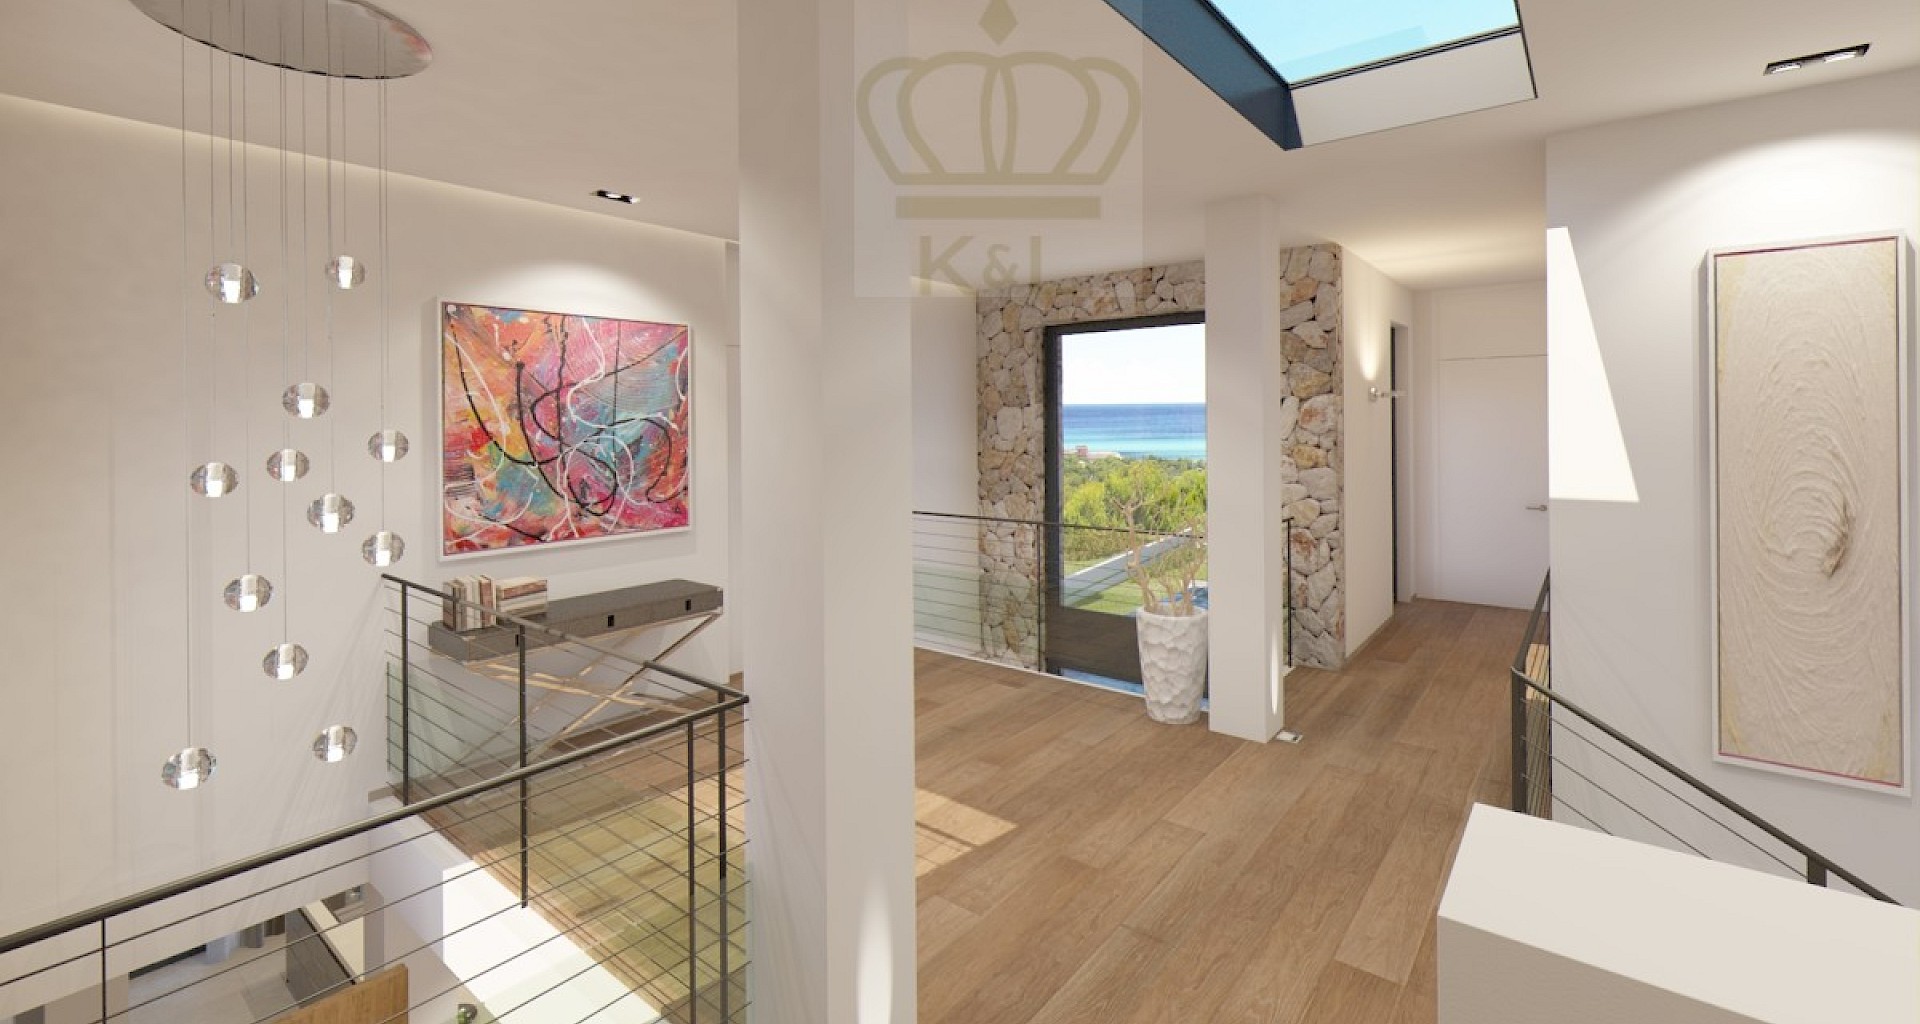 KROHN & LUEDEMANN Modern villa in Santa Ponsa with sea views Completion in 2021 Wohnbereich